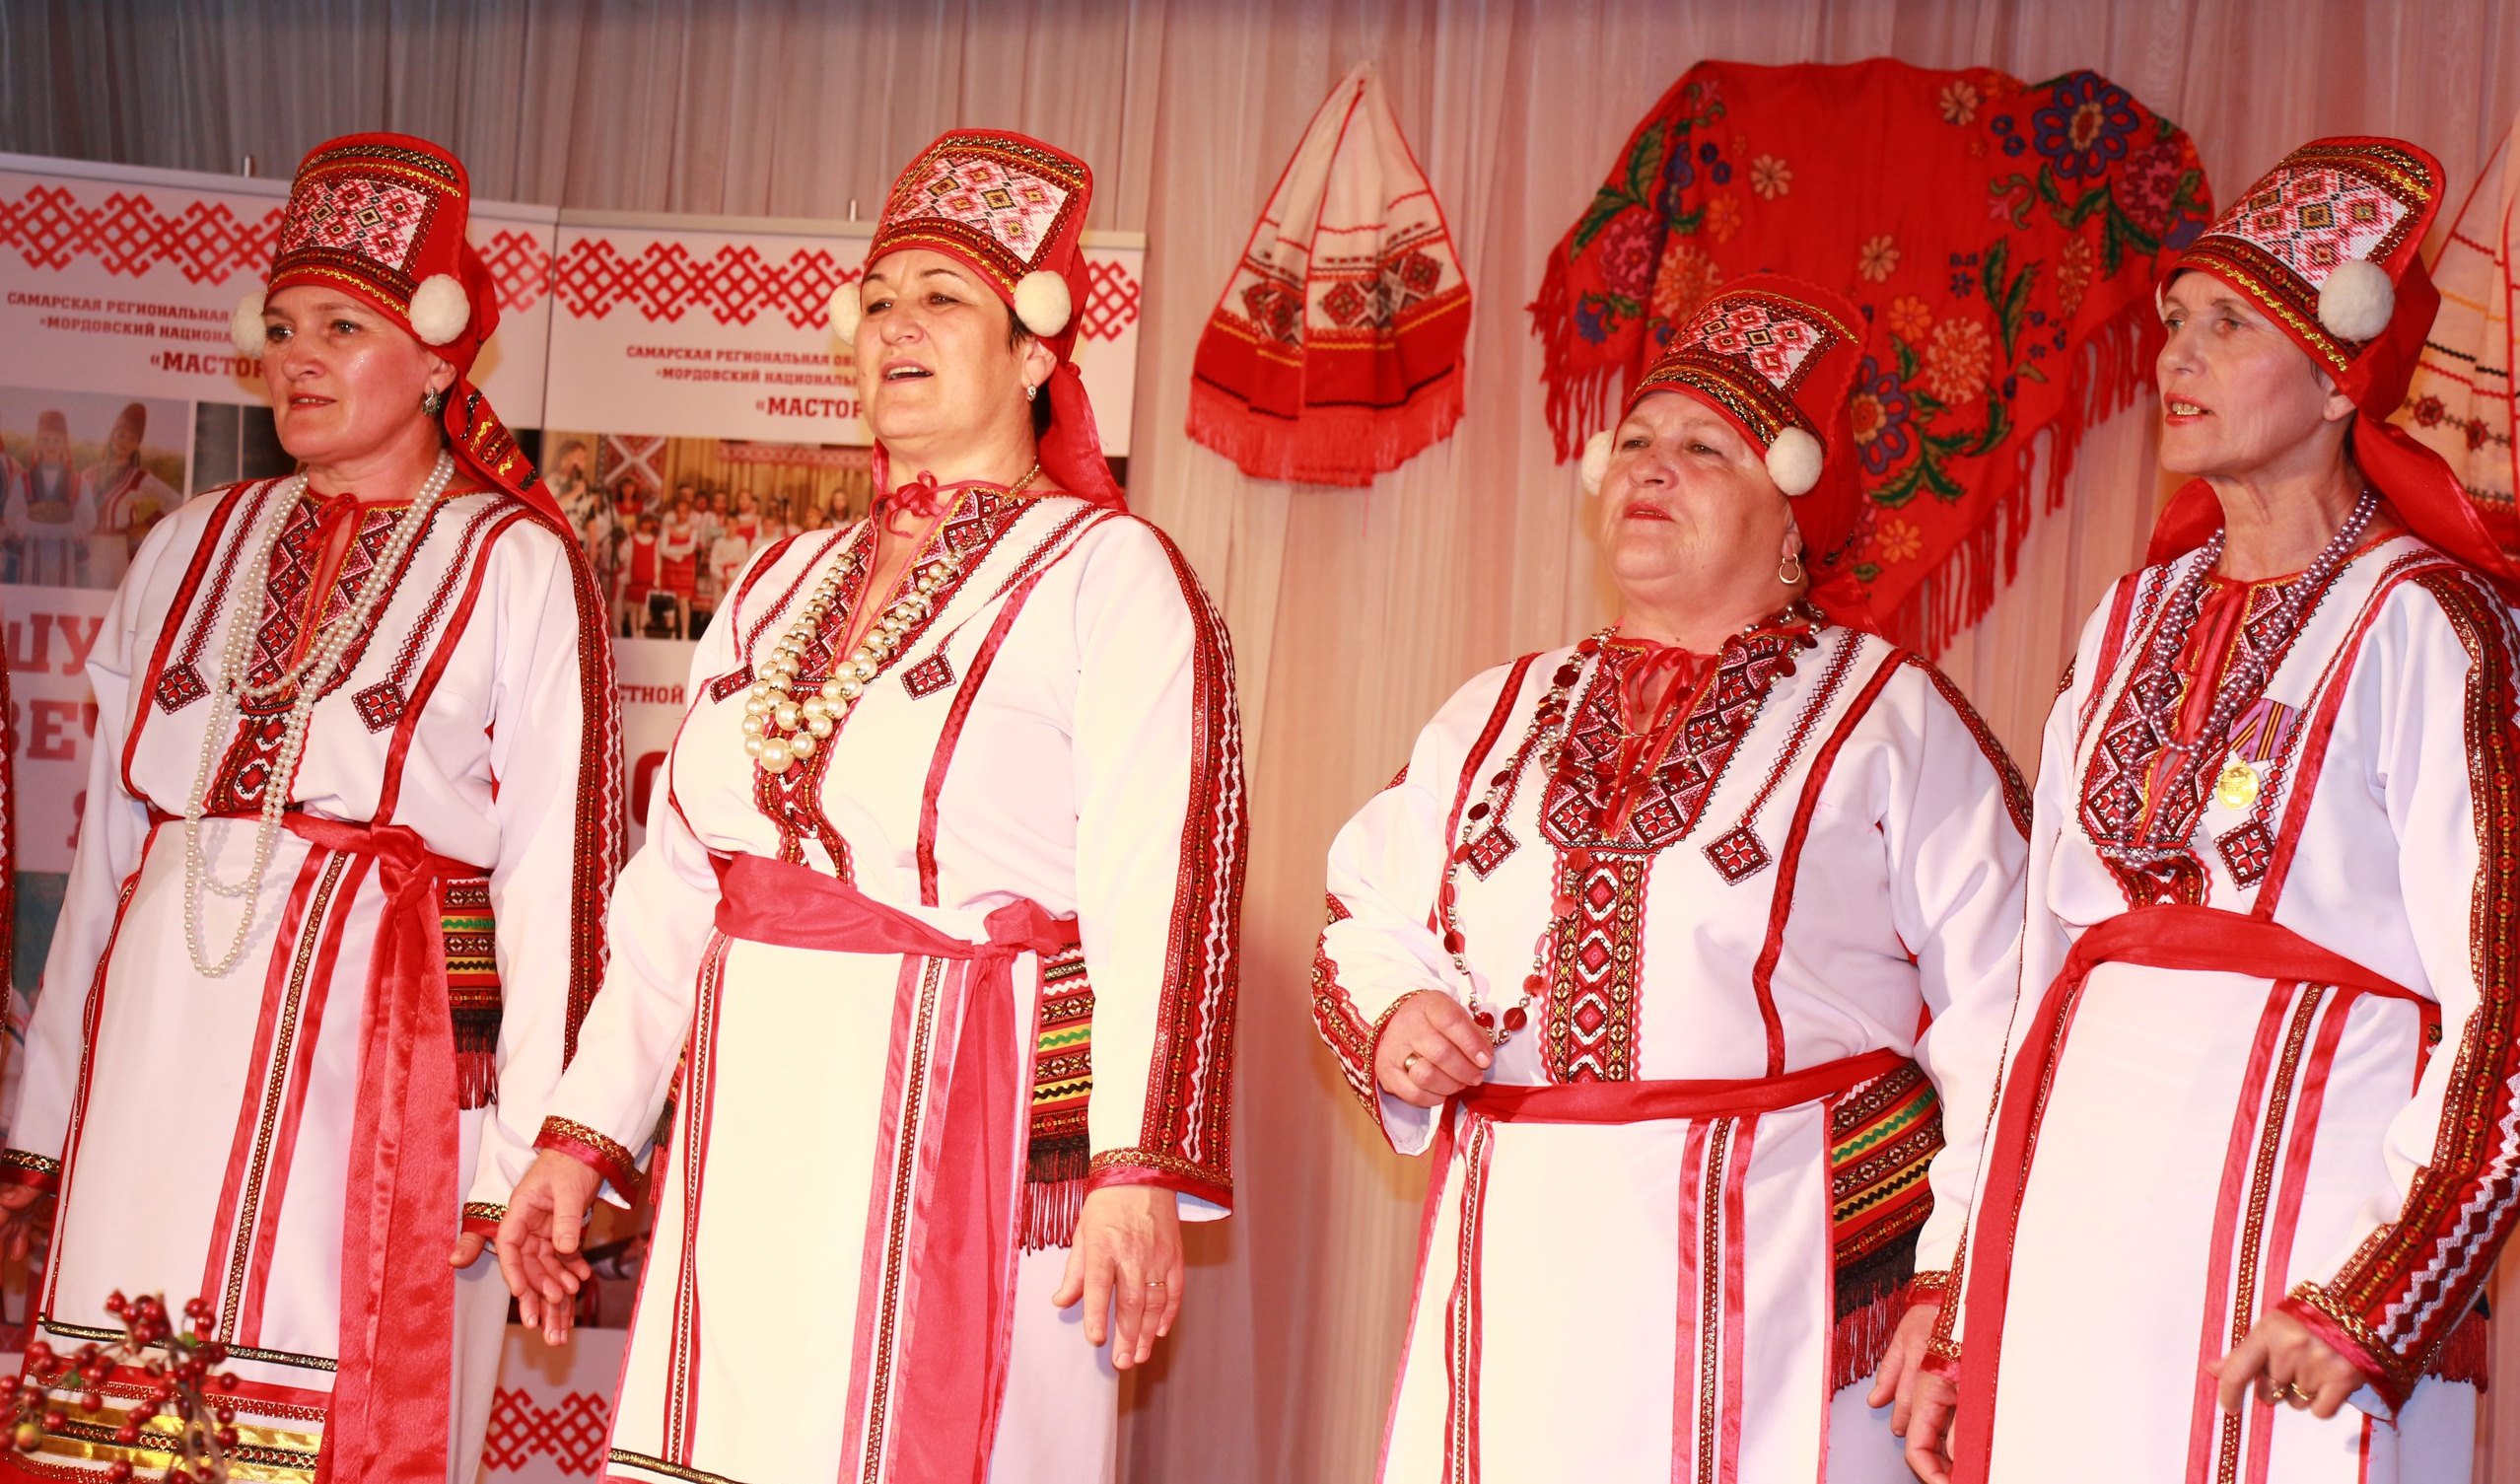 Мордовский фестиваль «Масторавань тундо» собрал участников со всей Самарской области